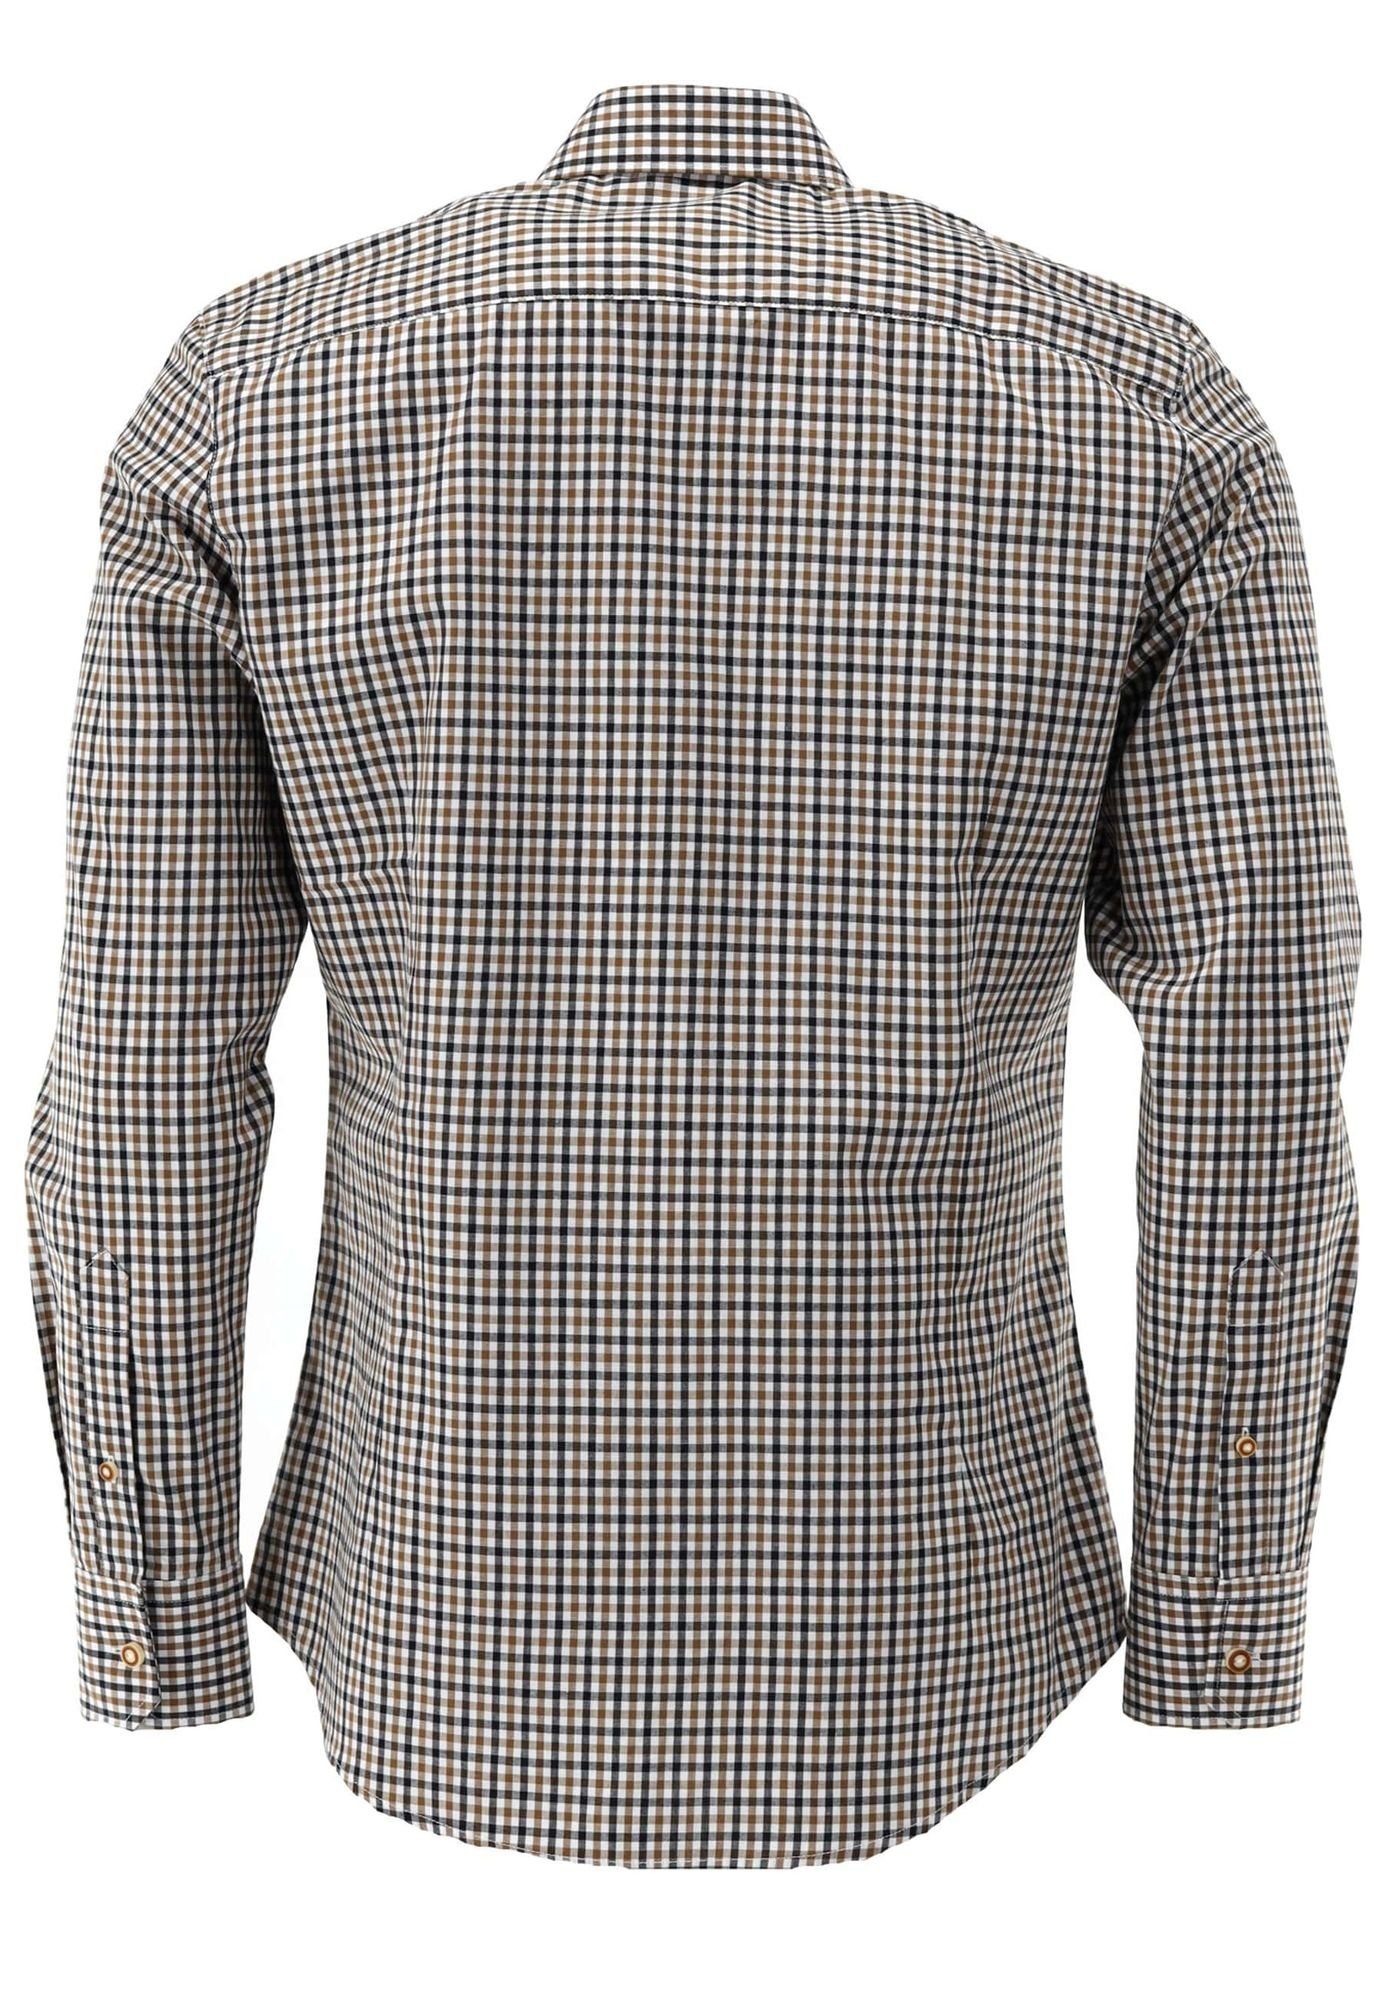 Outdoorhemd Jagdhemd Langarm OS-Trachten Tupopa auf Hirsch-Stickerei mittelbraun mit der Brusttasche